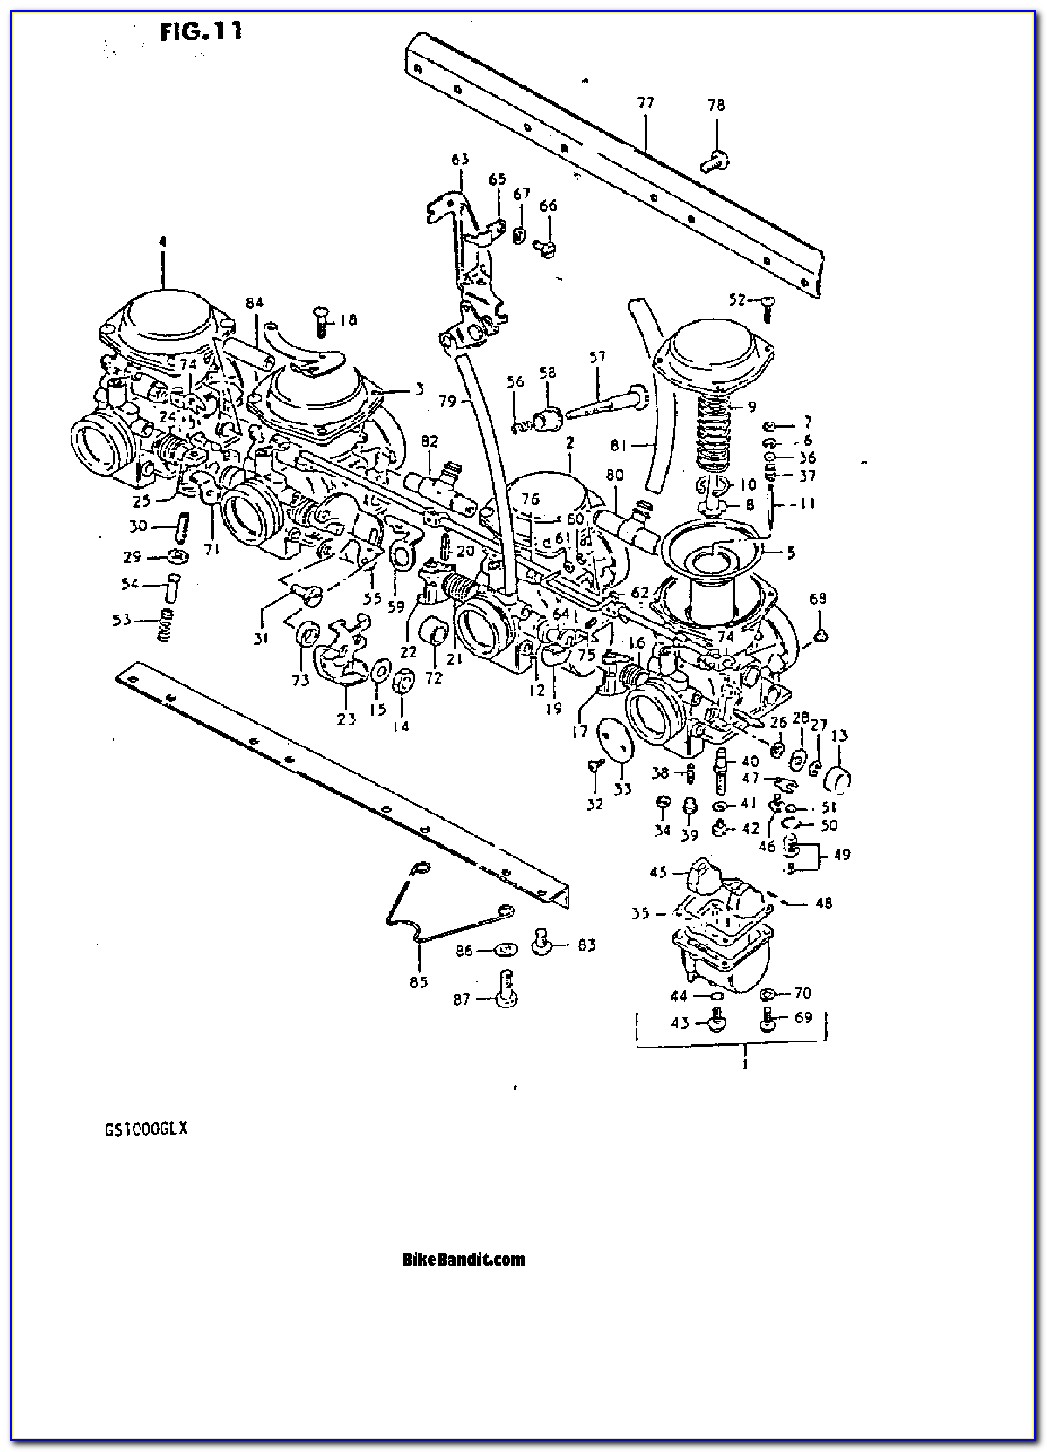 1996 Suzuki Savage 650 Wiring Diagram